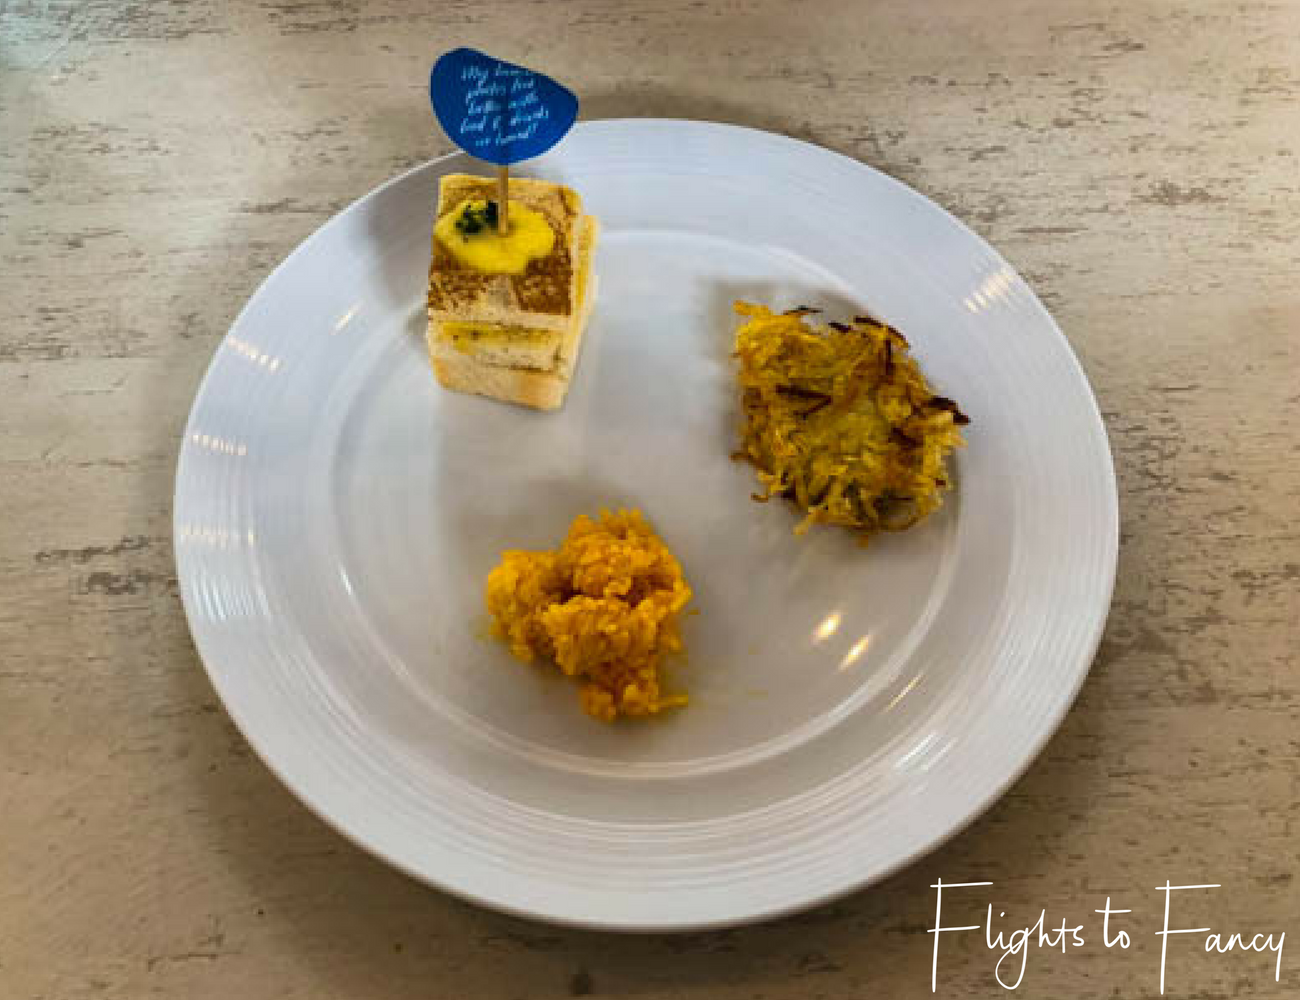 Flights To Fancy at Cha Cha's Boracay - Breakfast Miniatures